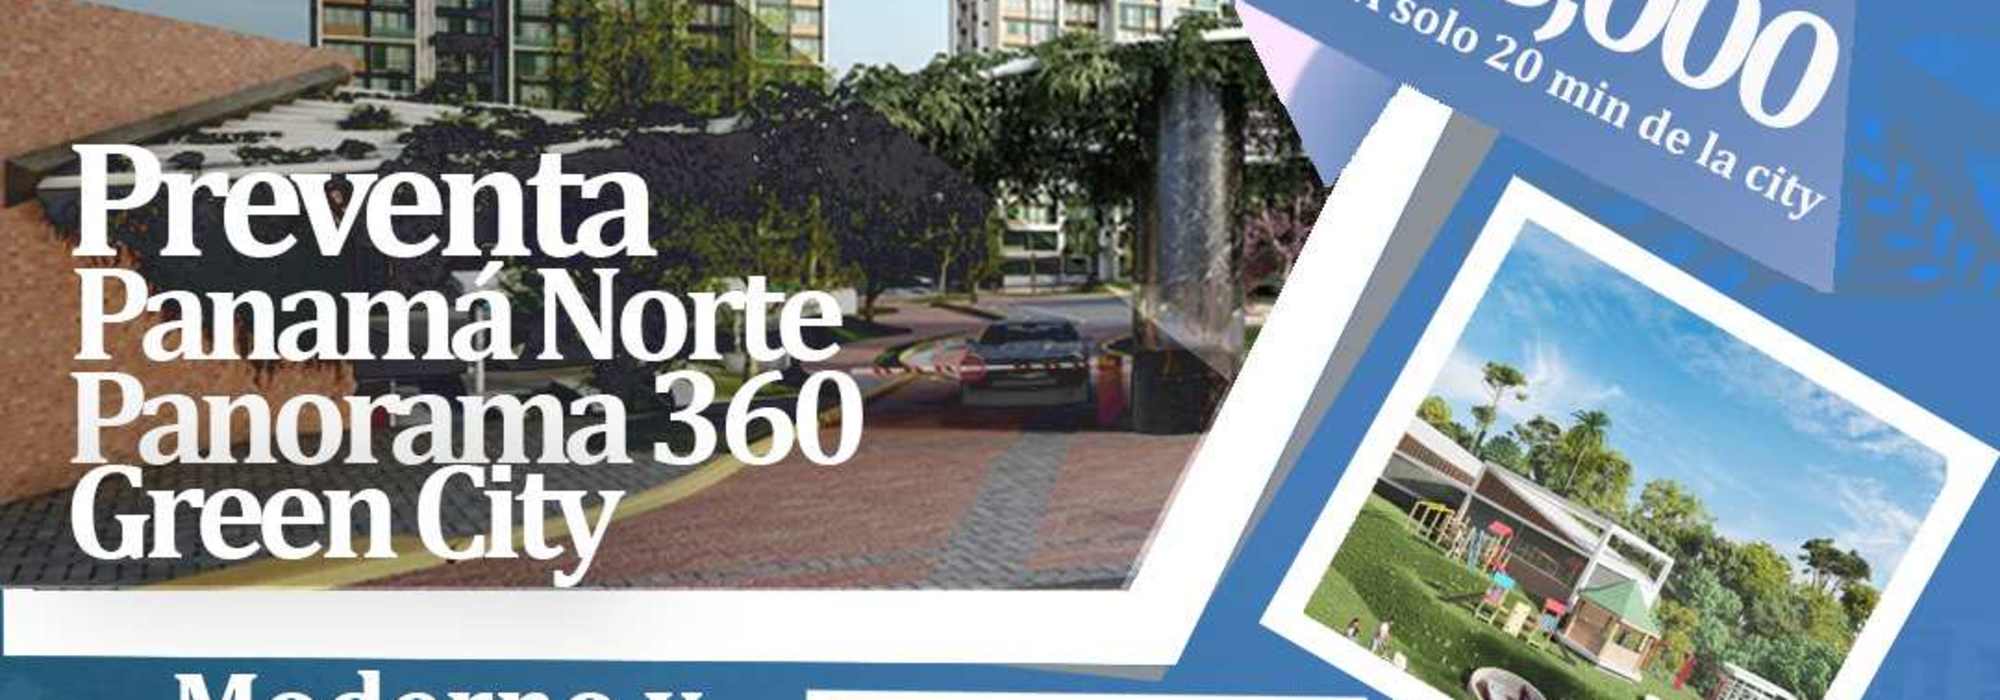 PROYECTO PANAMA NORTE - GREEN CITY - PANORAMA 360